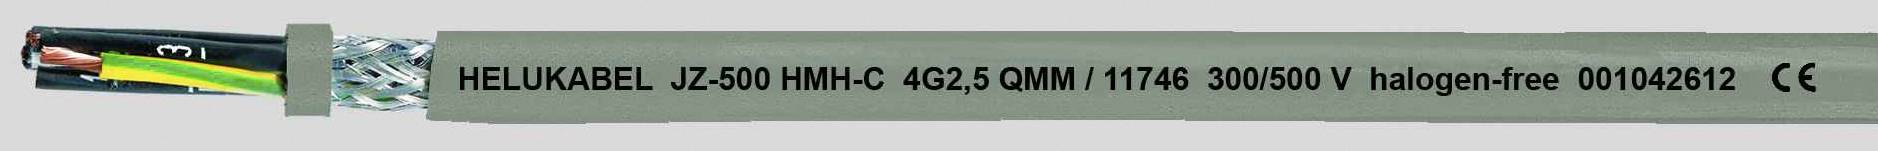 HELUKABEL JZ-500 HMH-C Steuerleitung 4 G 0.50 mm² Grau 11658-500 500 m